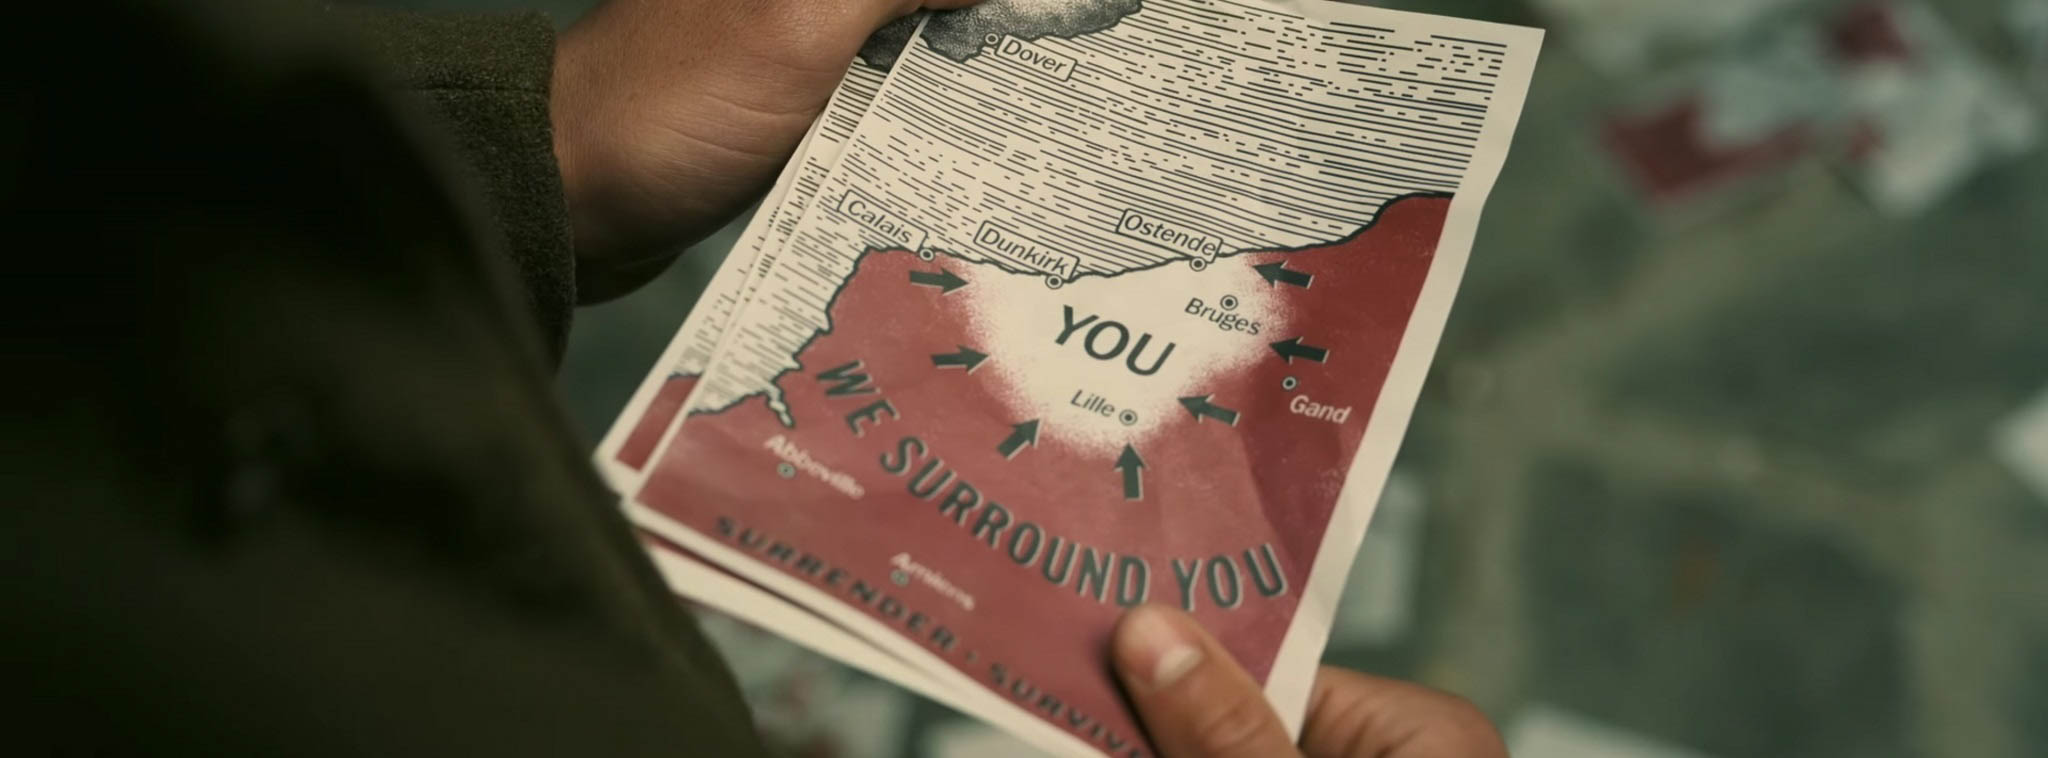 Mời xem trailer mới phim Dunkirk - Trận chiến nước Pháp của Christopher Nolan